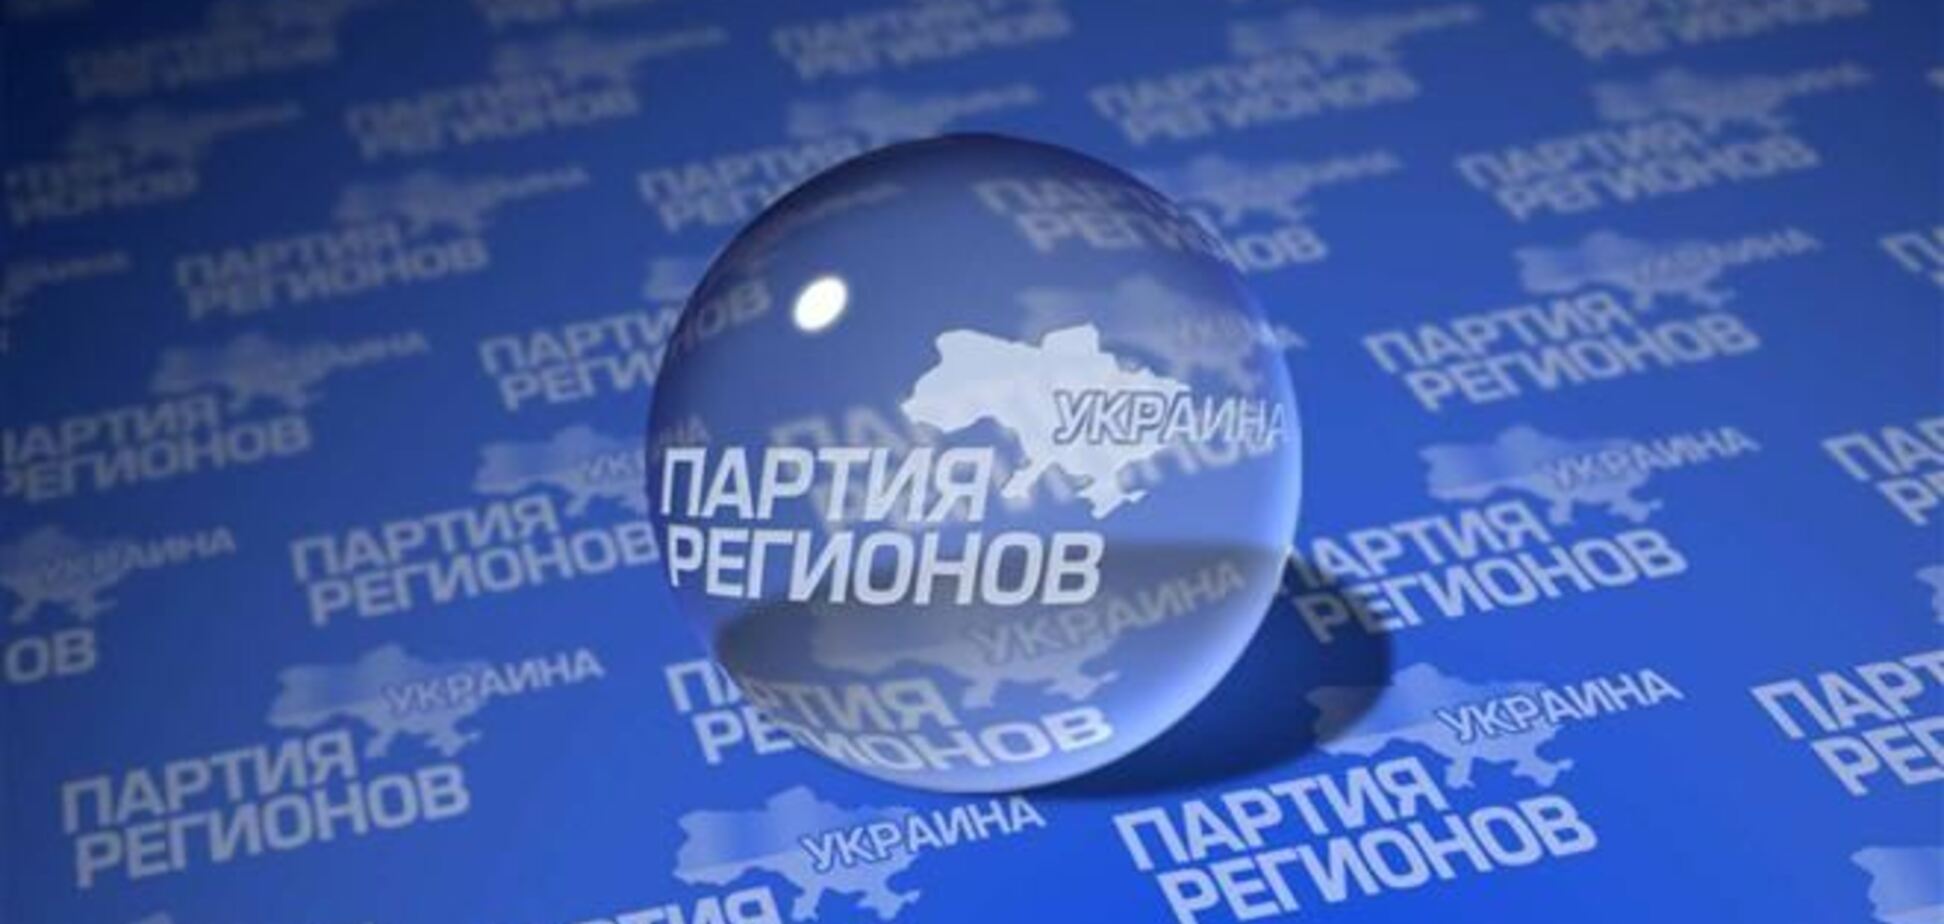 Регионалы создали рабочую группу по выведению Украины из кризиса